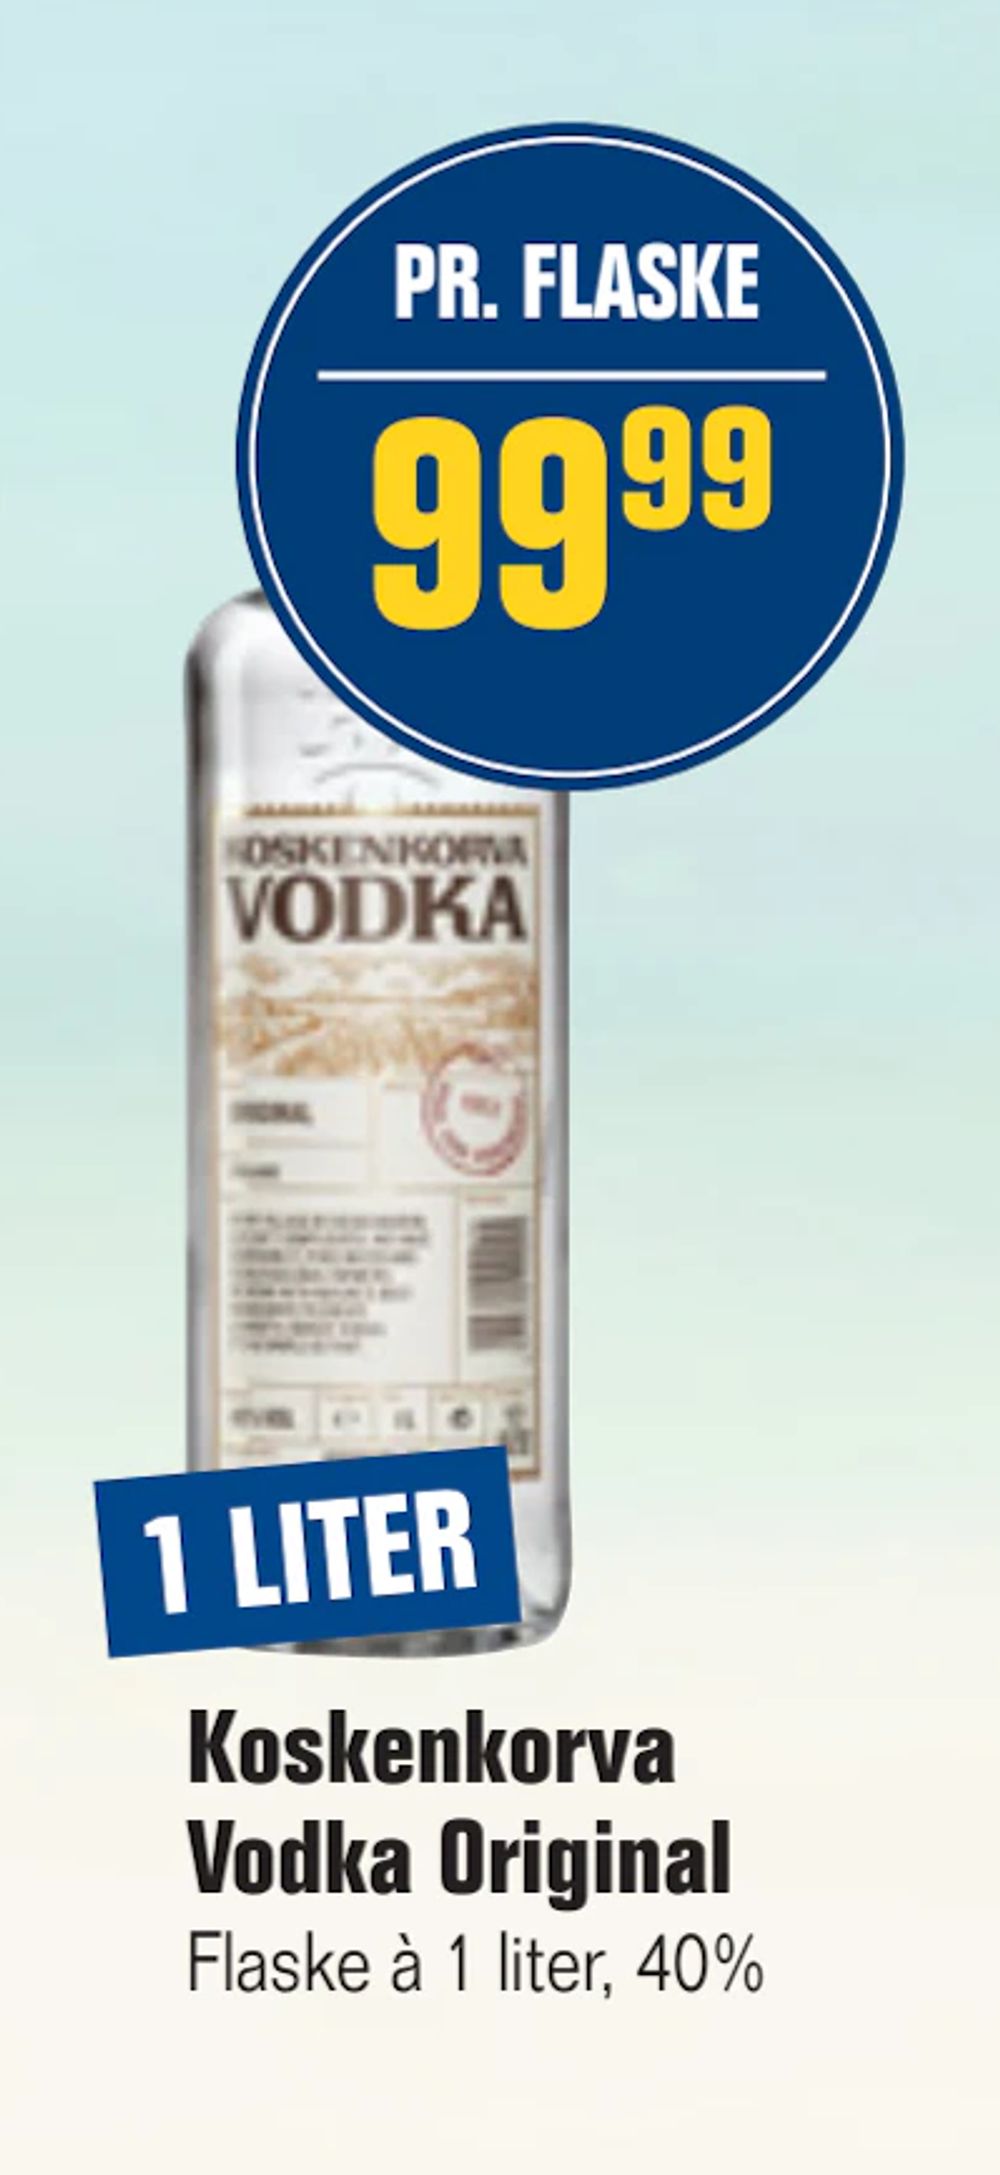 Tilbud på Koskenkorva Vodka Original fra Otto Duborg til 99,99 kr.